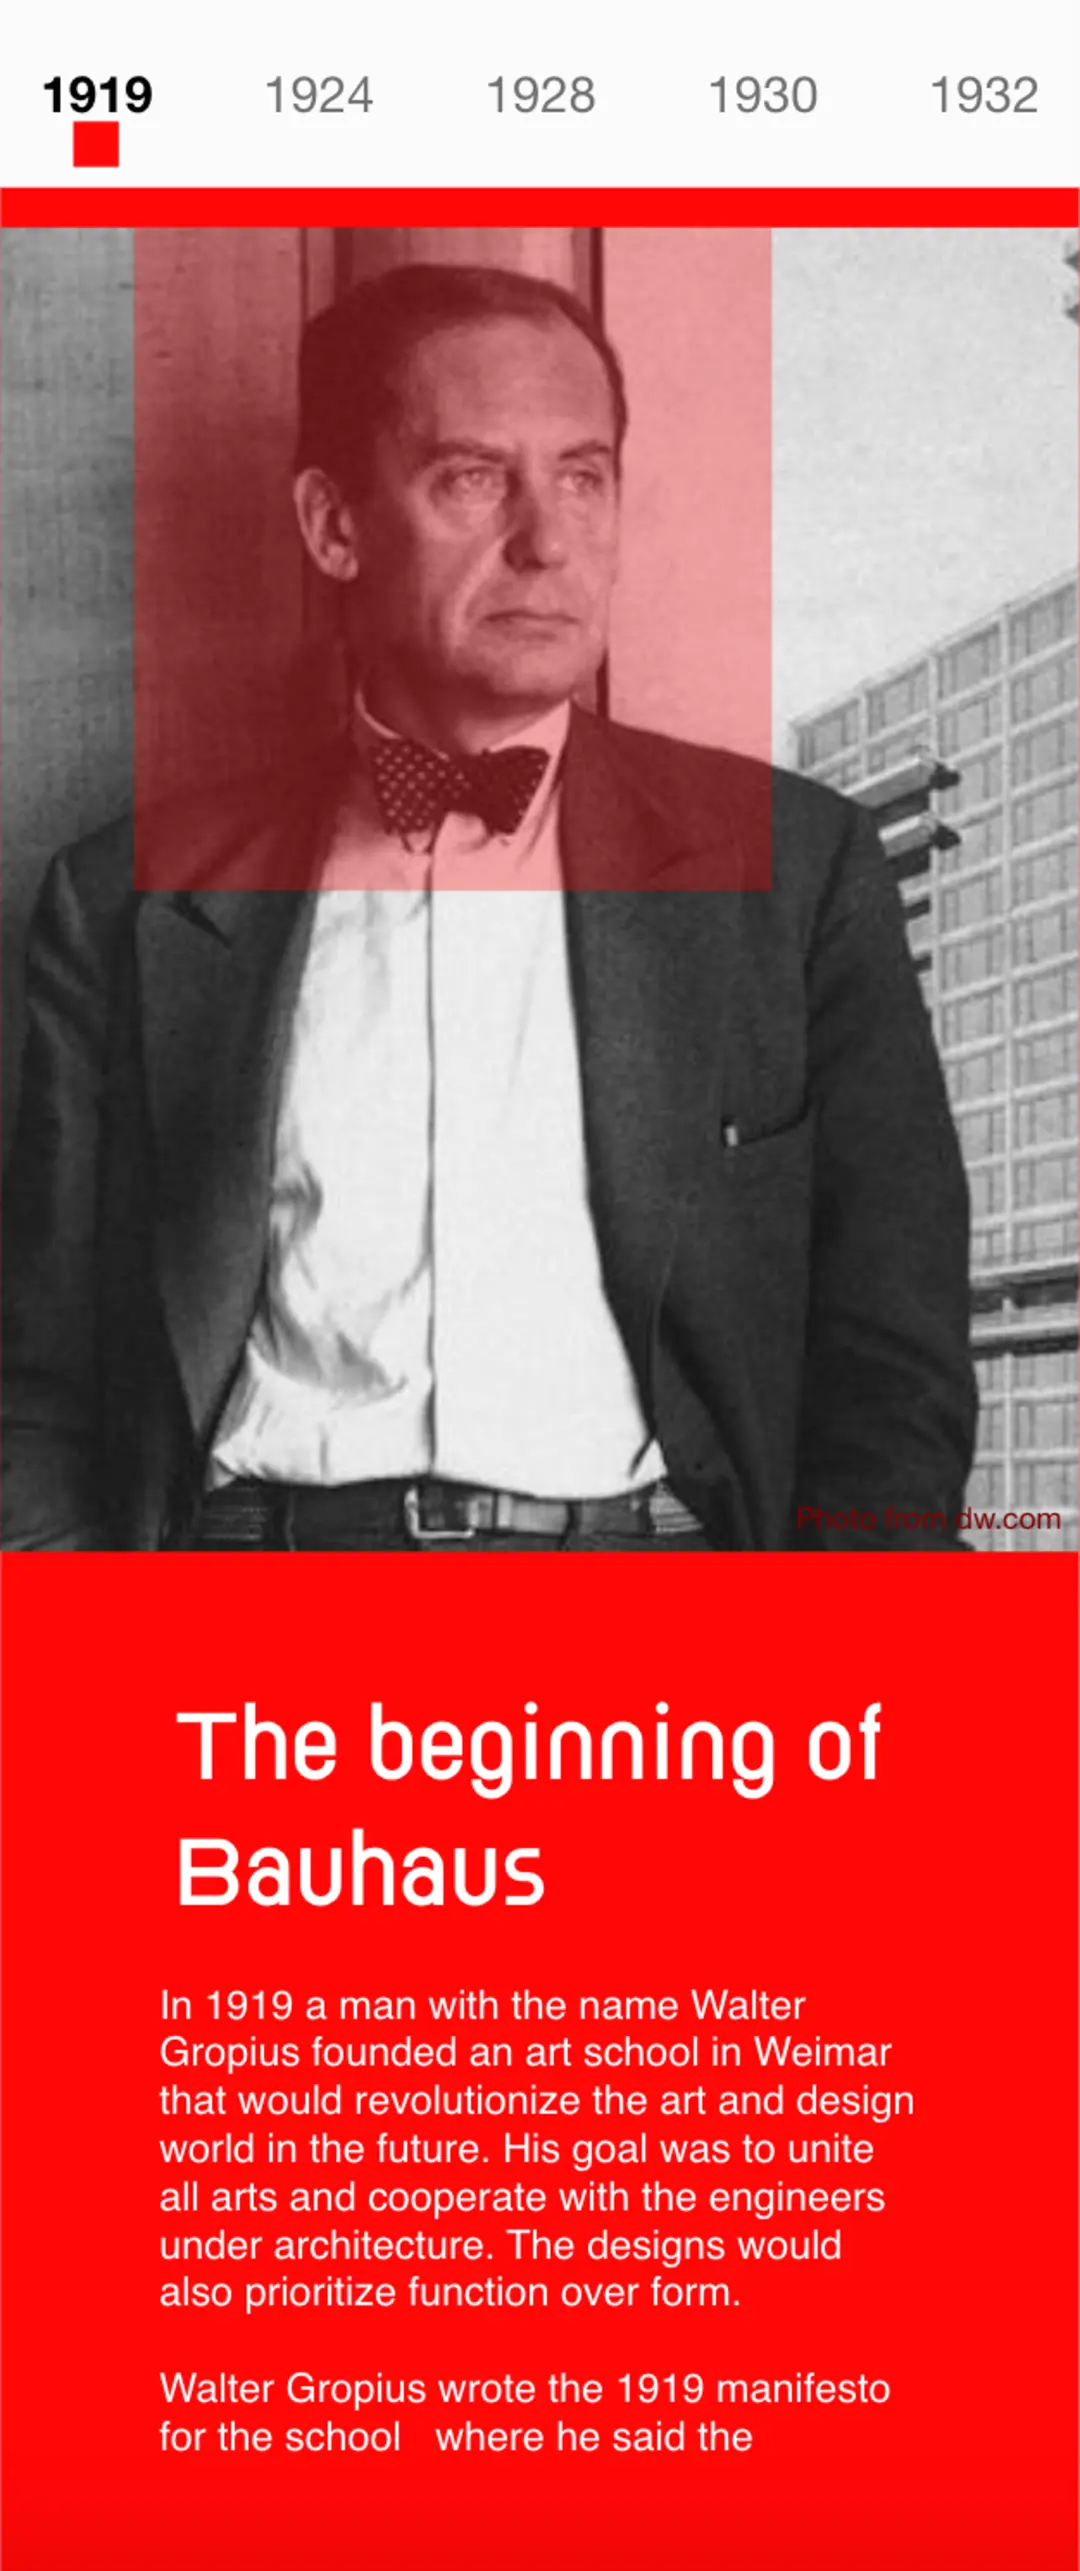 The beginning of Bauhaus